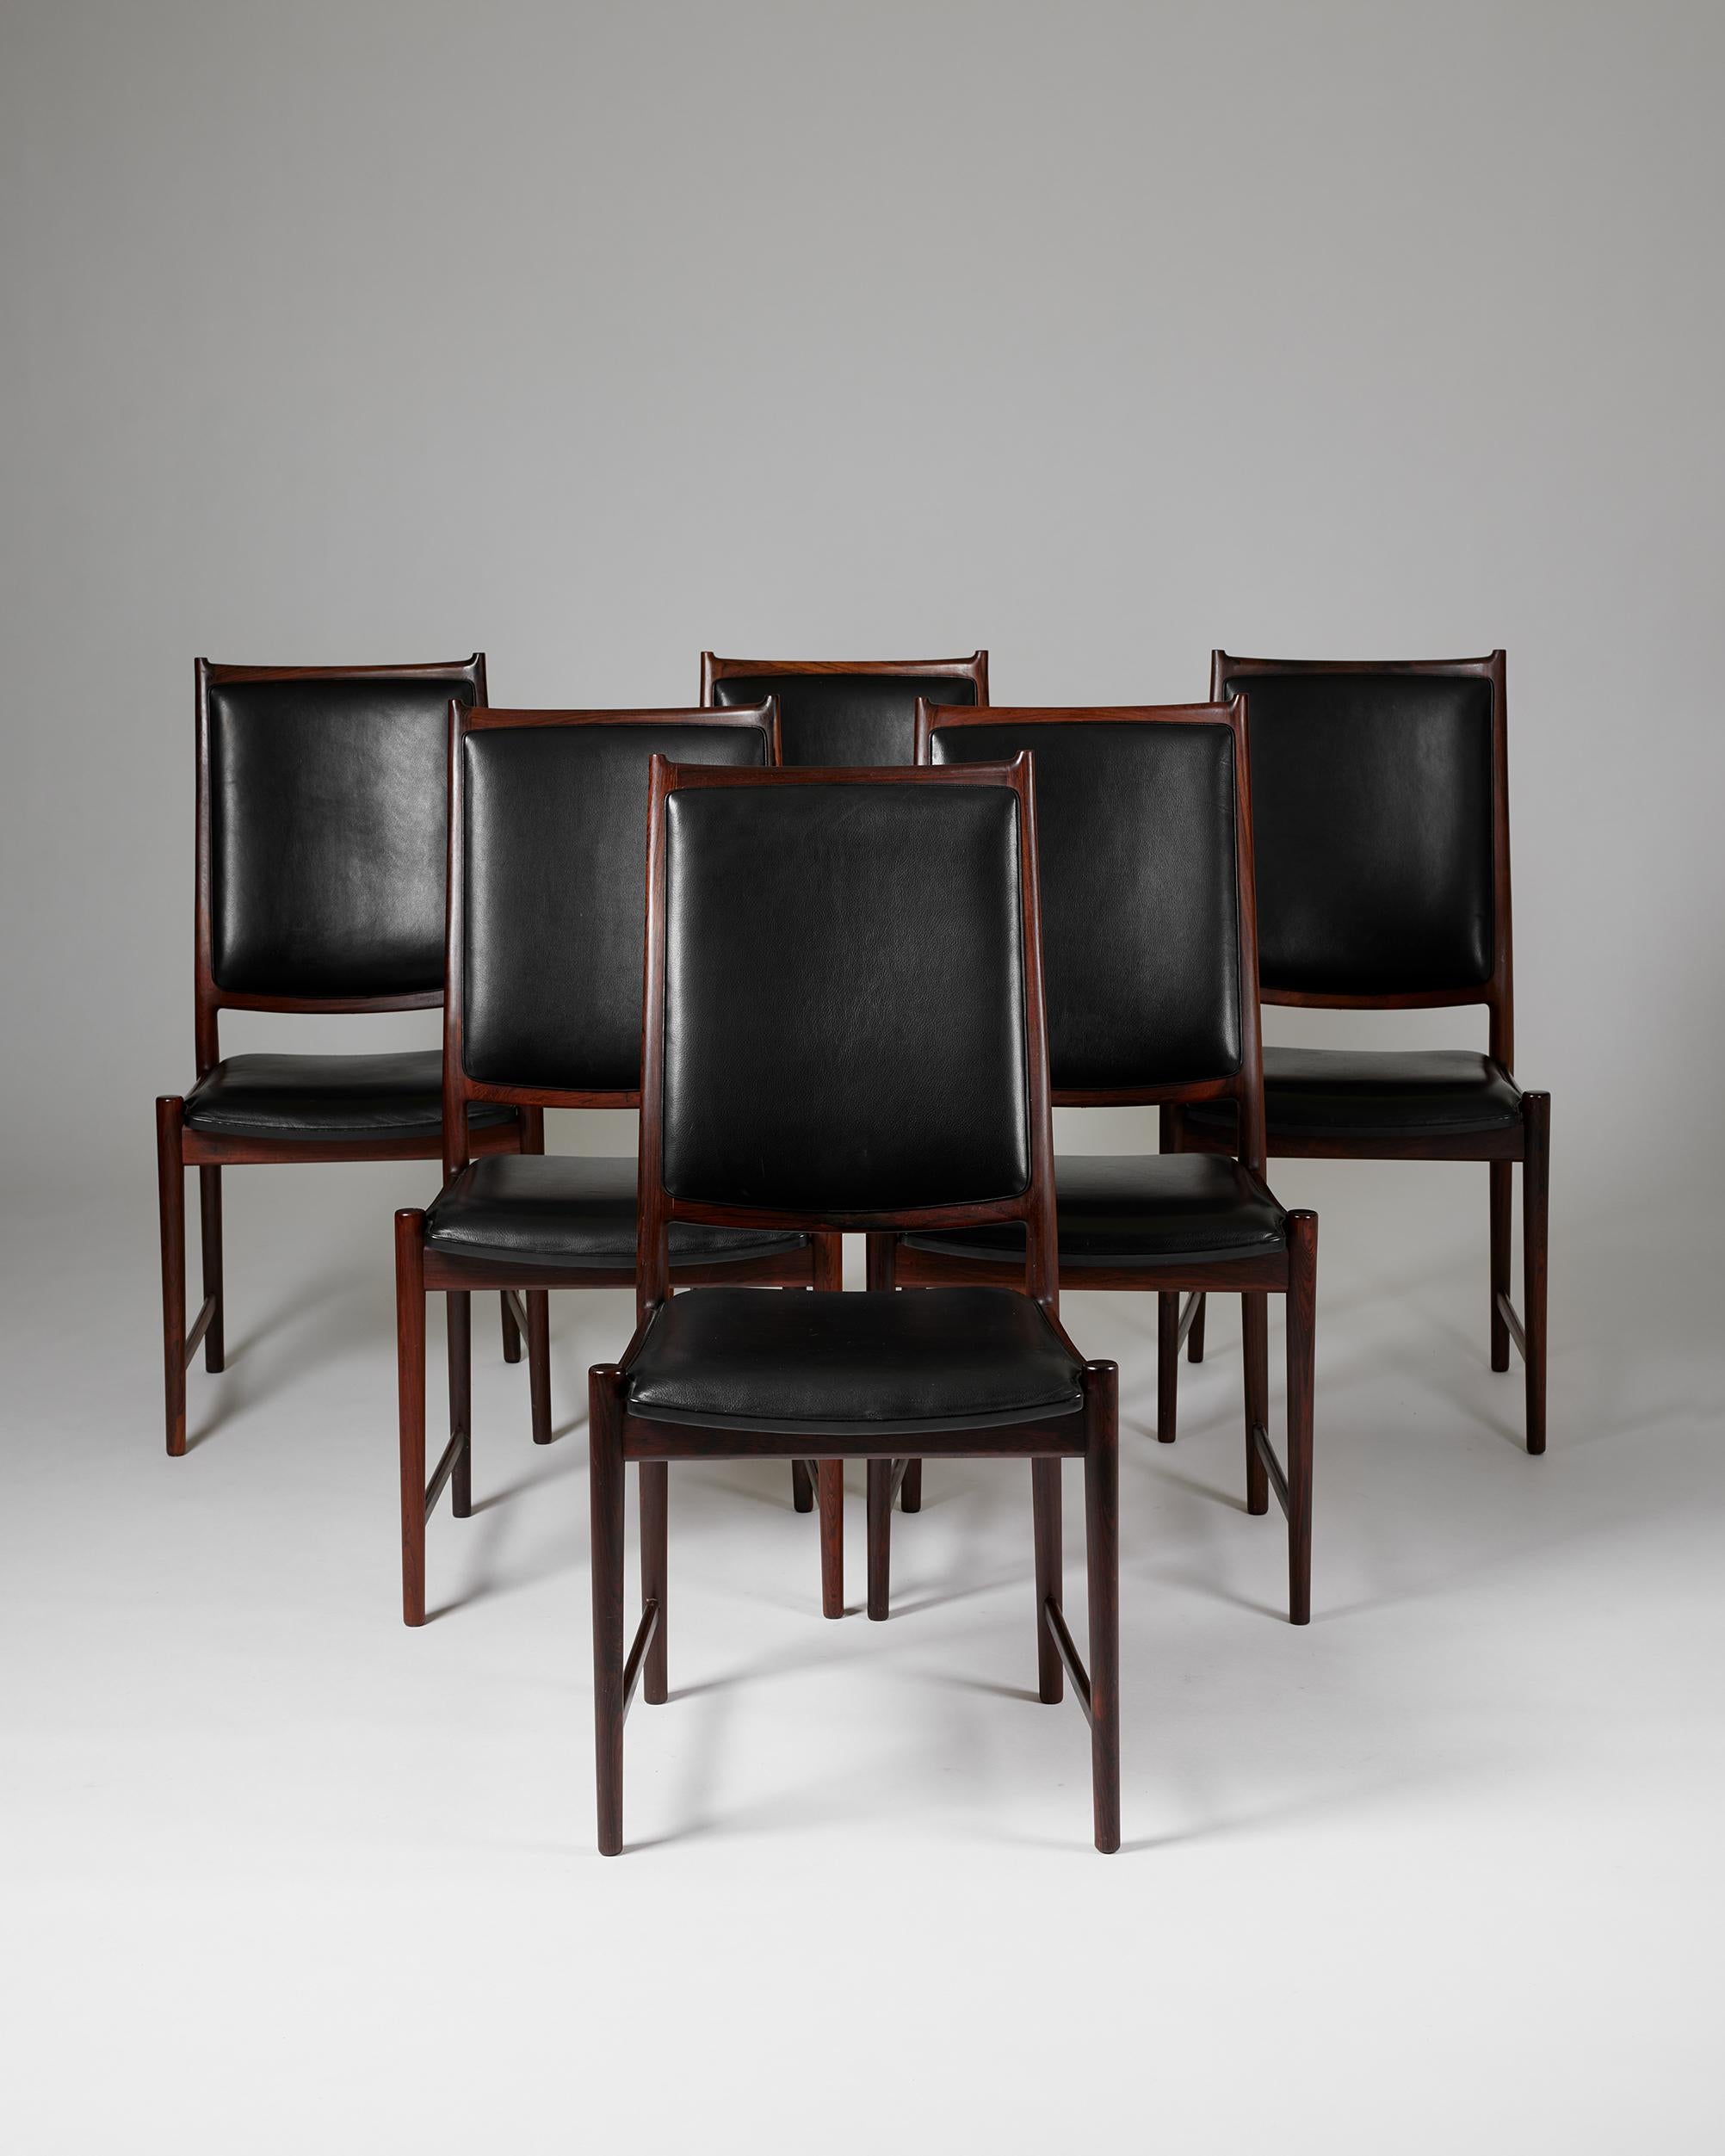 Satz von sechs Esszimmerstühlen 'Darby', entworfen von Torbjörn Afdal für Bruksbo,
Norwegen, 1960er Jahre.

Palisanderholz und Leder.

Gestempelt.

H: 96 cm
B: 47,5 cm
T: 58 cm 
SH: 45 cm